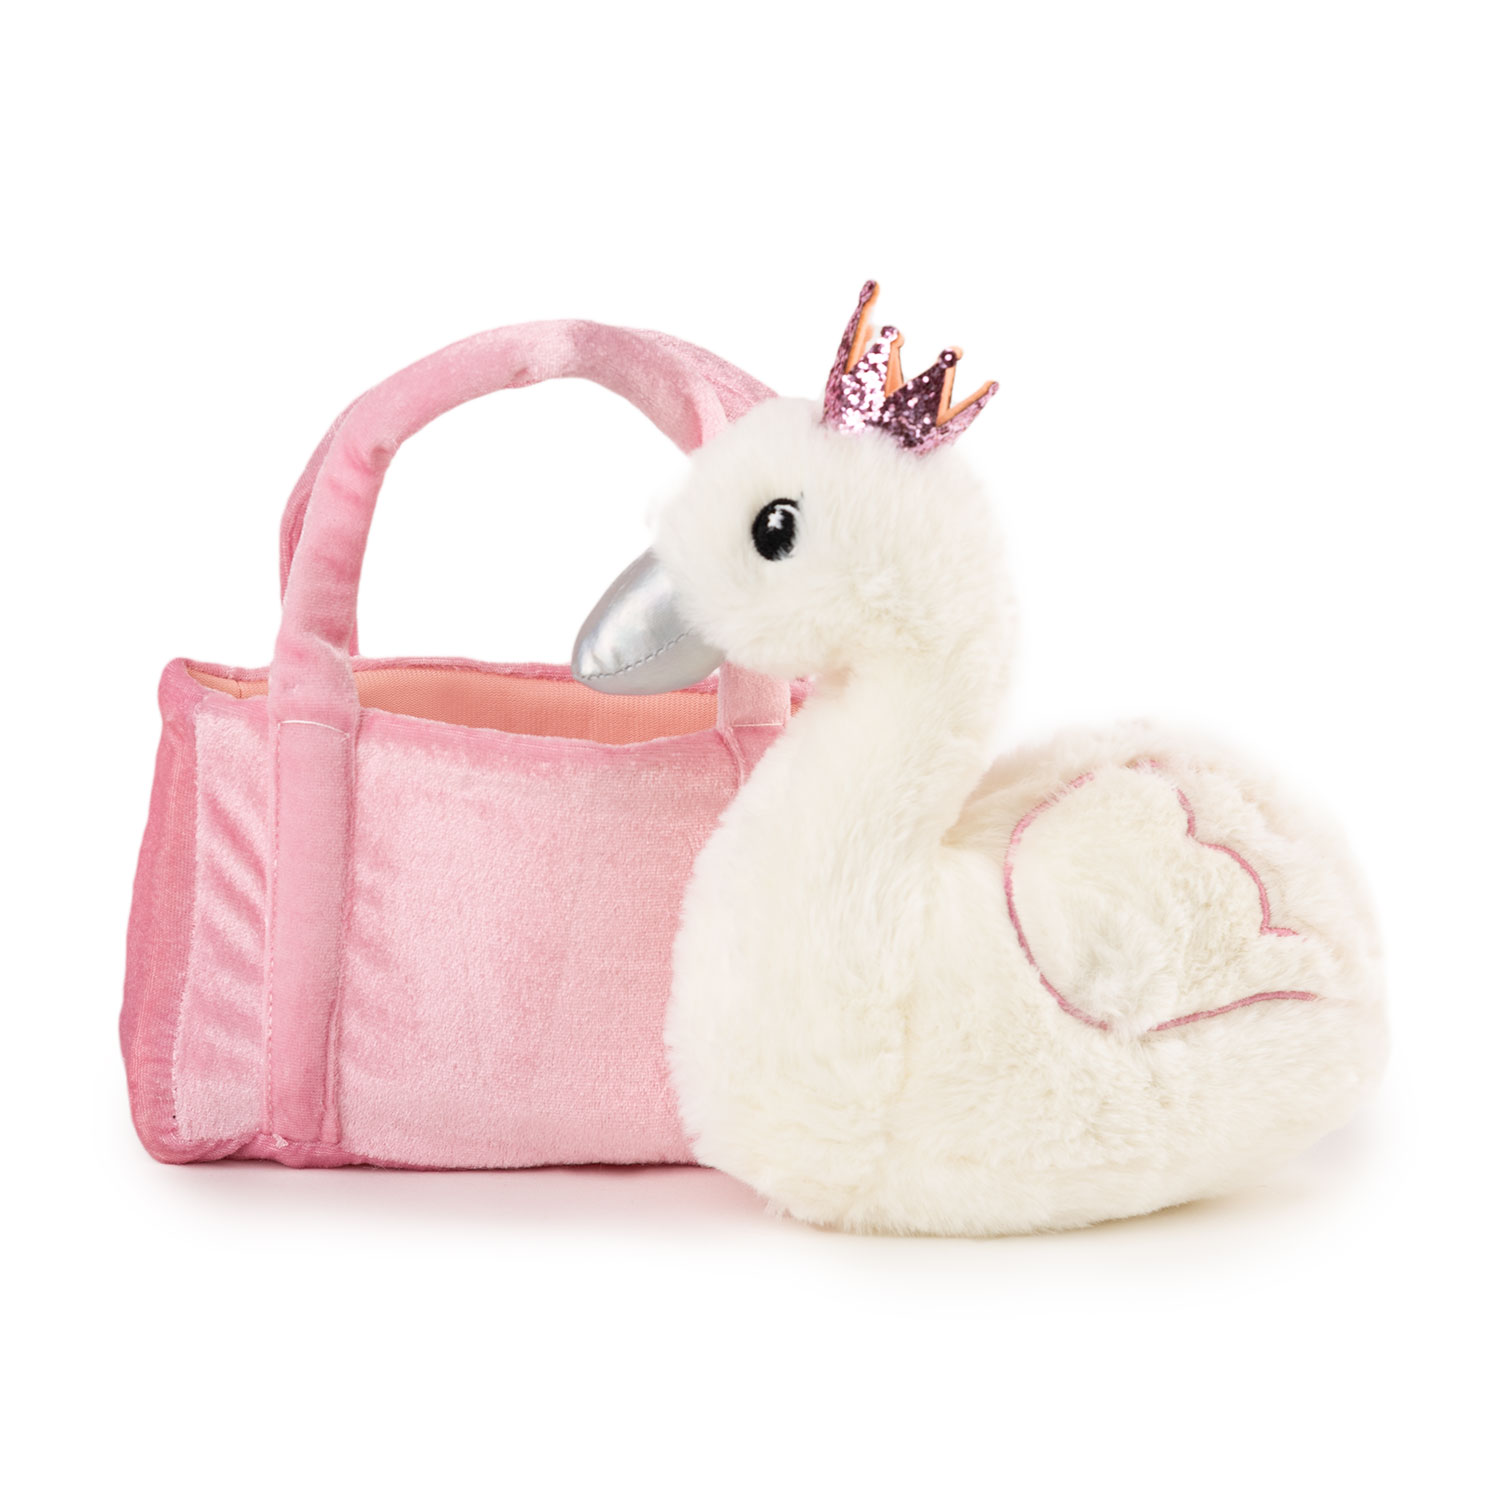 Swan in a bag